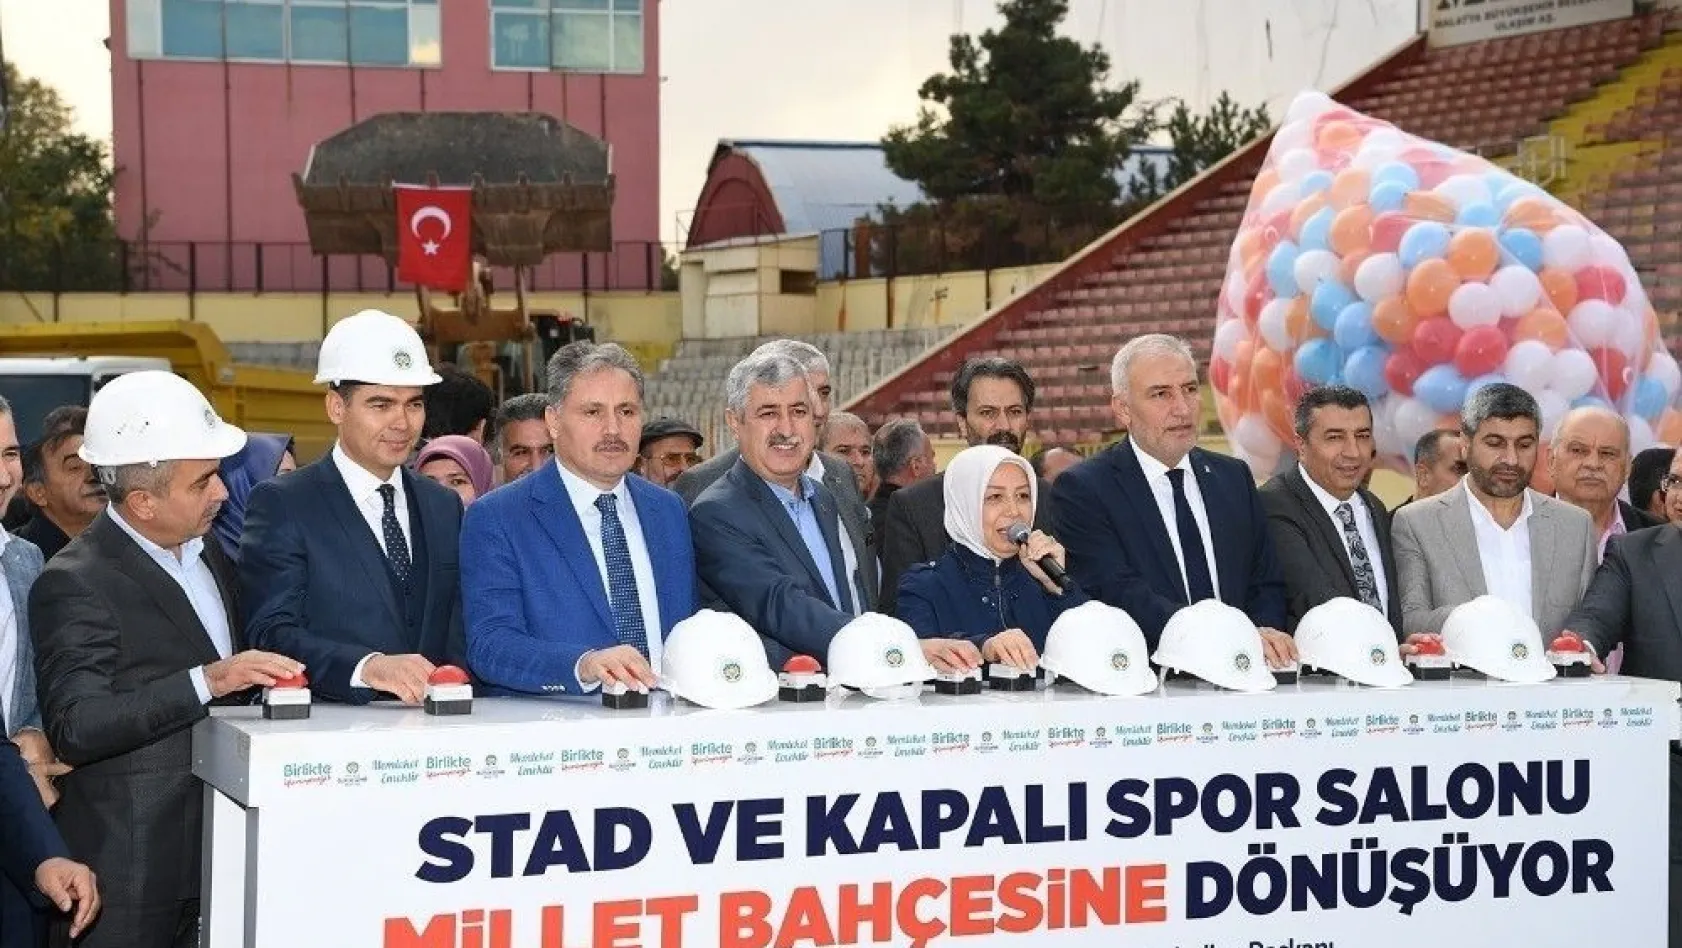 Malatya Büyükşehir Belediyesi Millet Bahçesi için ilk adımı attı
